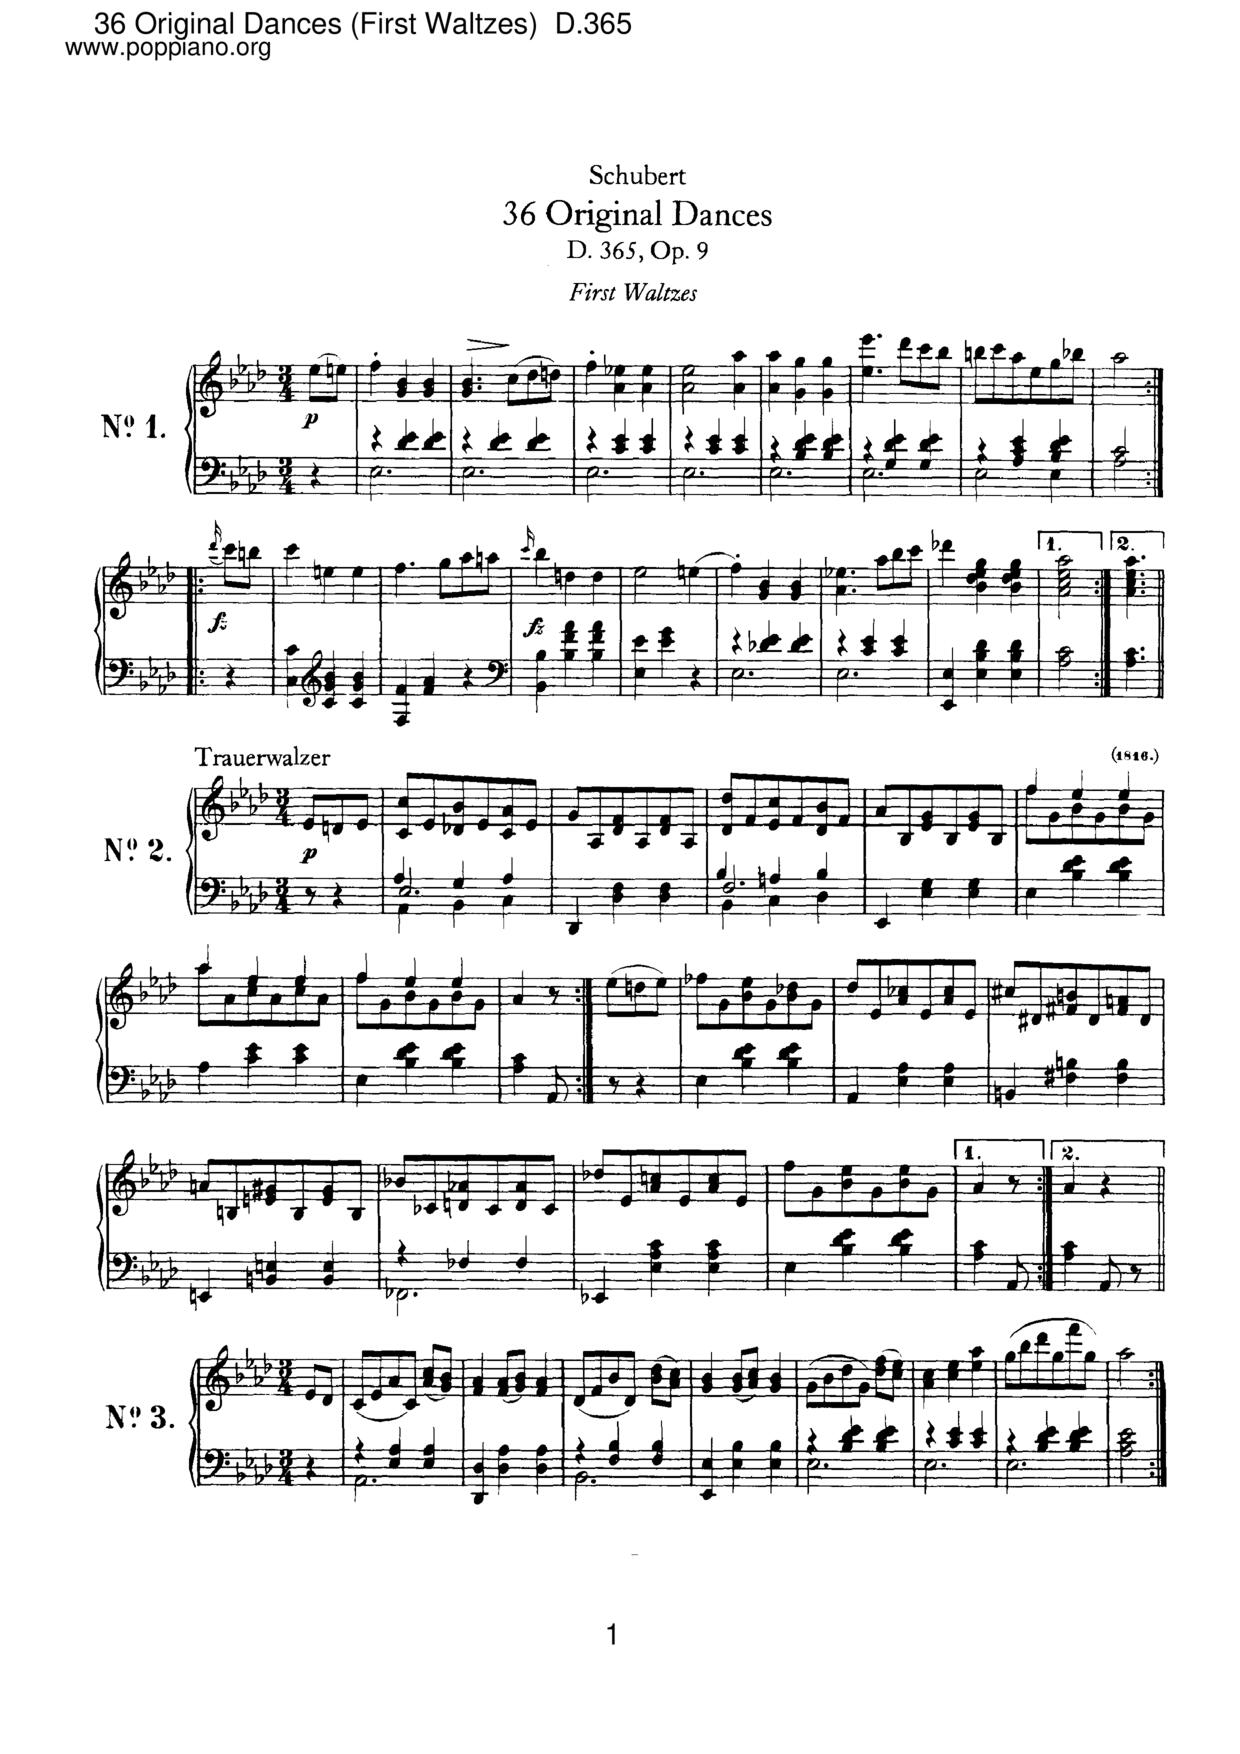 36 Original Dances (First Waltzes), D.365 (Op.9)琴譜